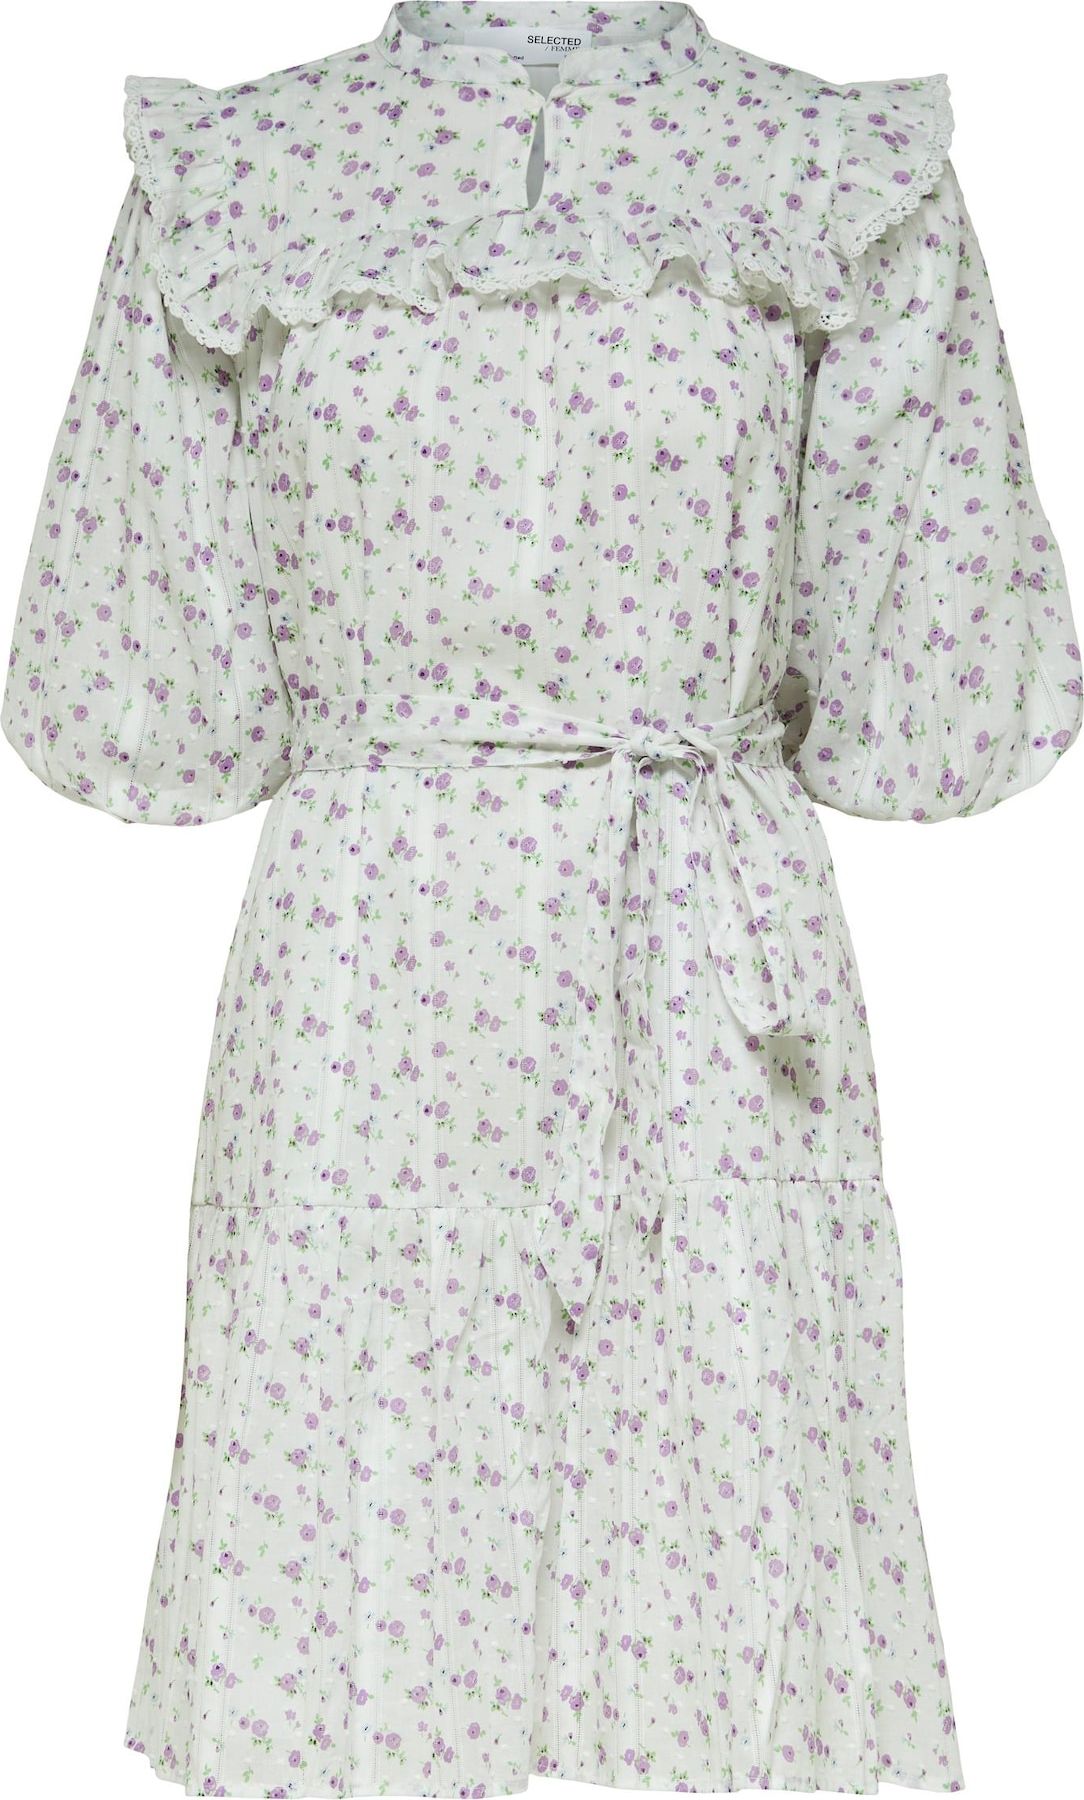 SELECTED FEMME Košilové šaty 'Susy' zelená / světle fialová / bílá